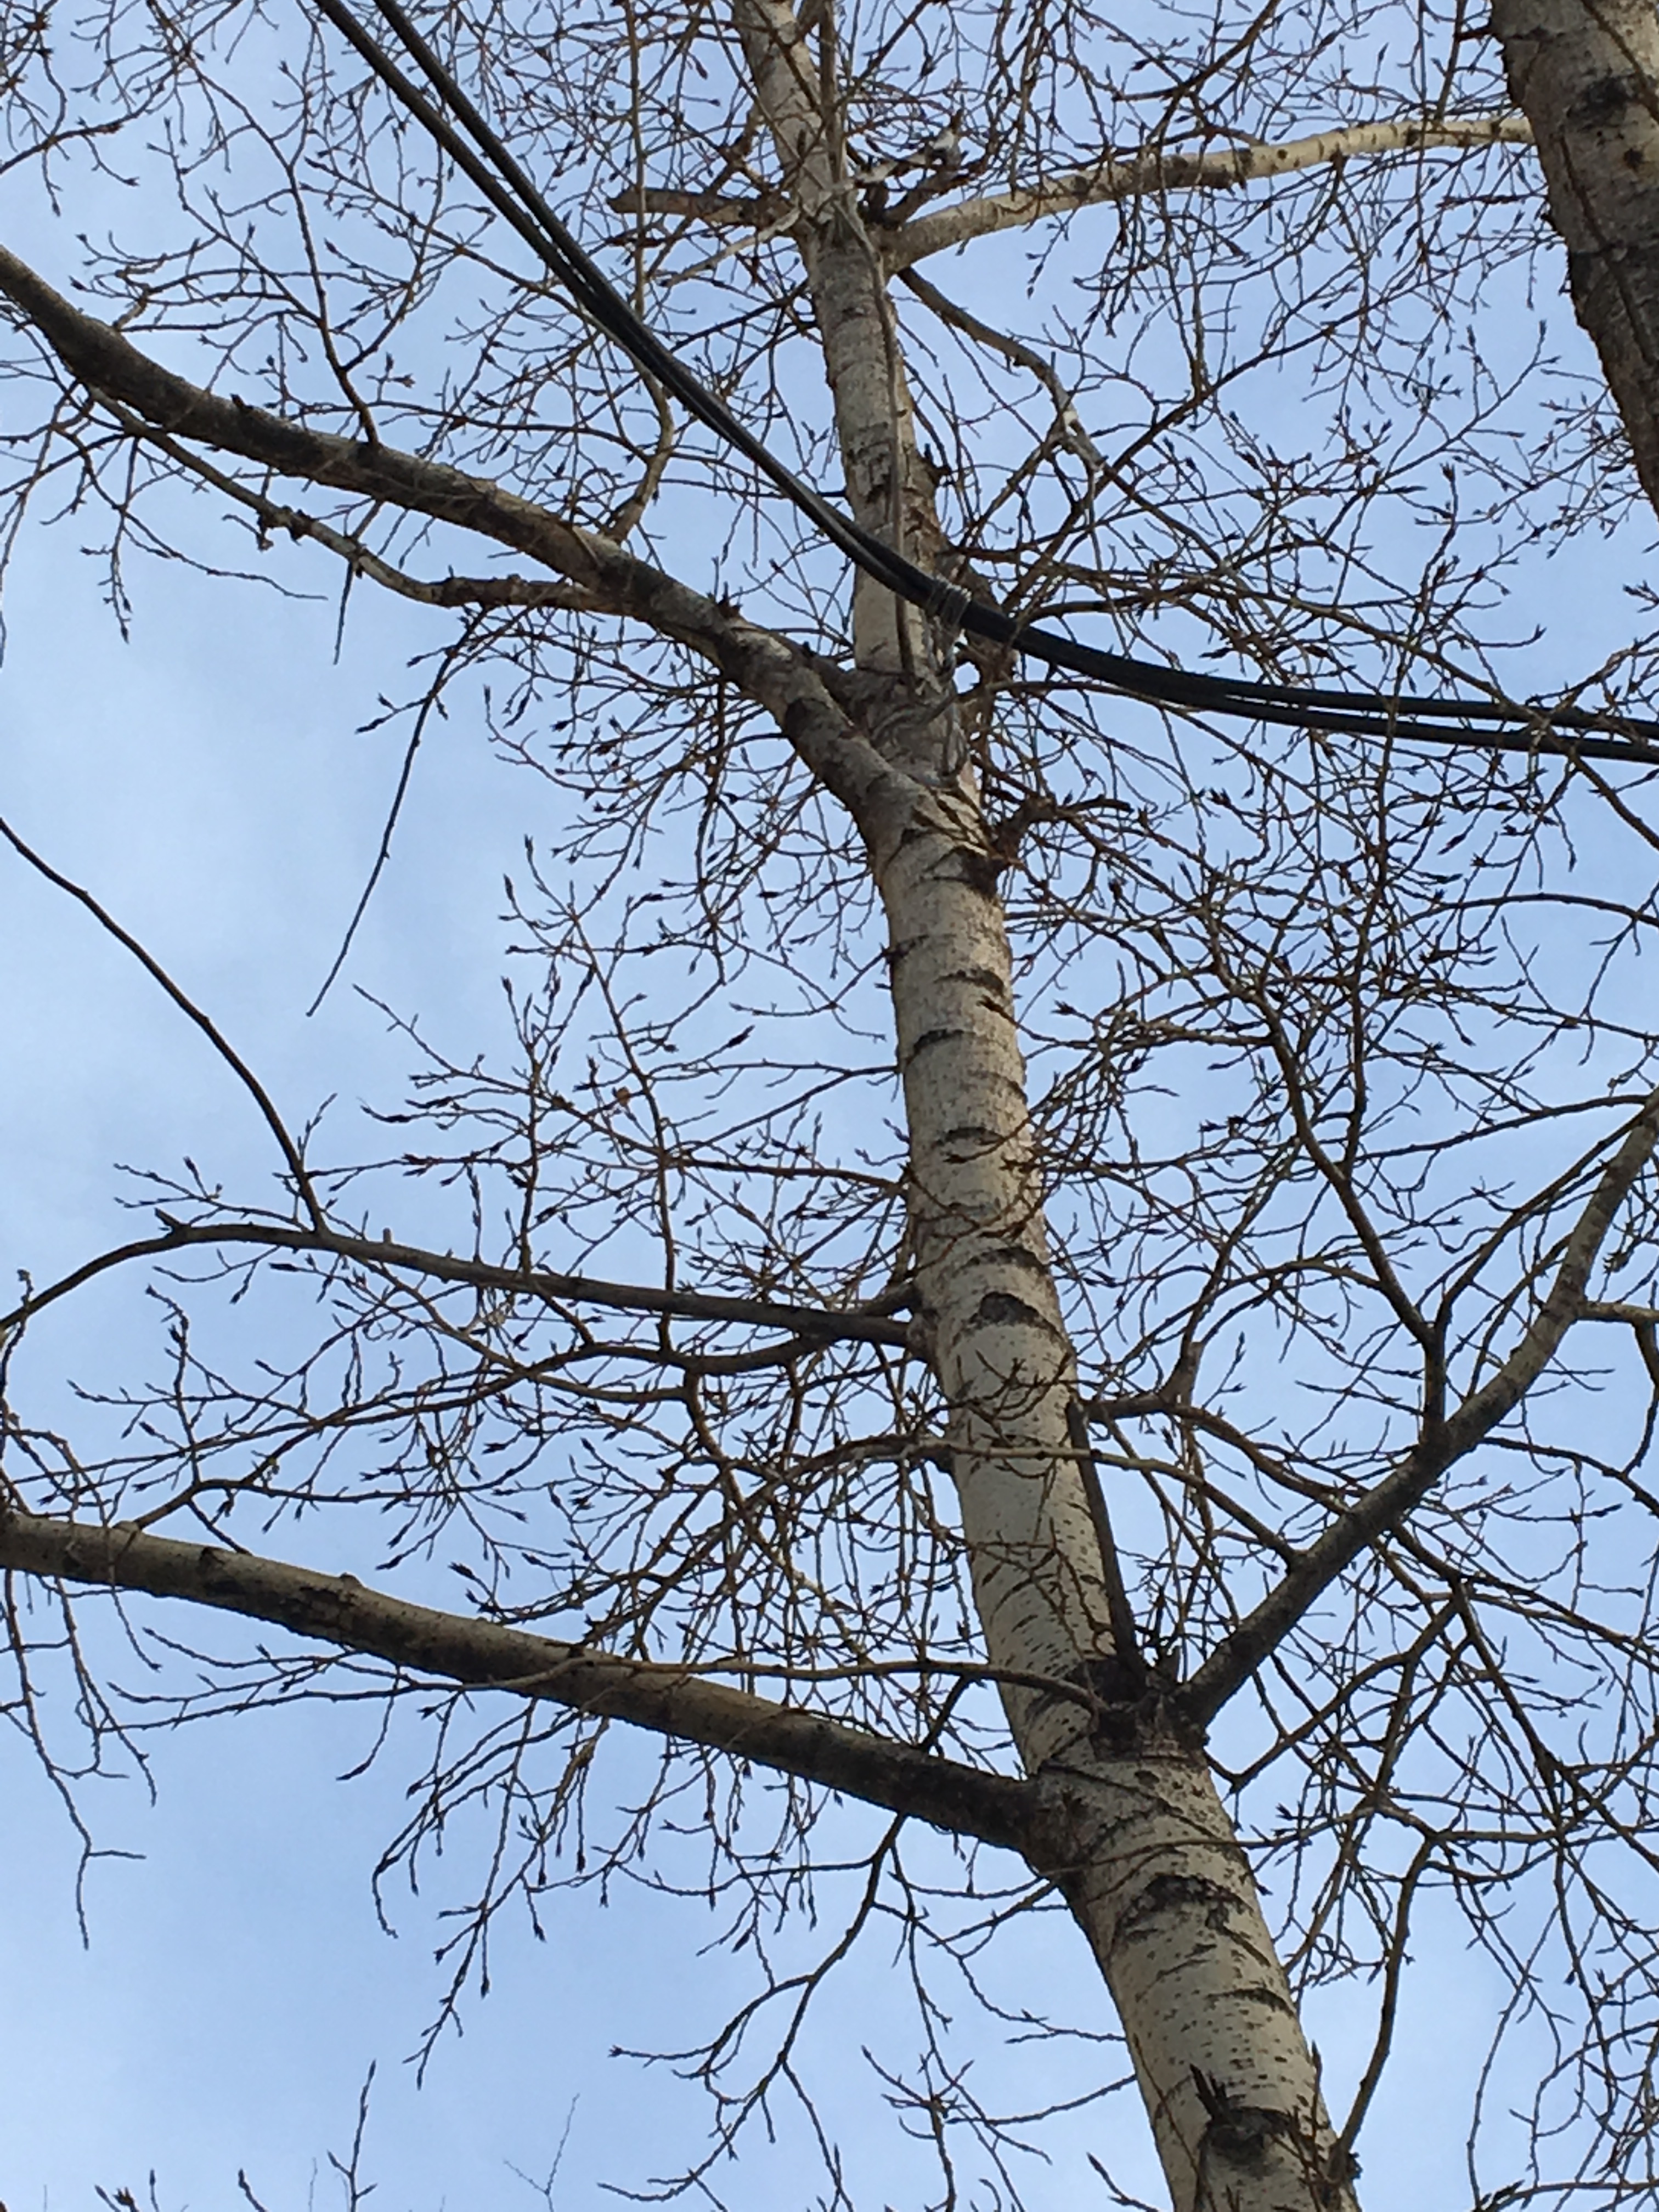 Читинец обнаружил провода на деревьях у комитета ЖКХ